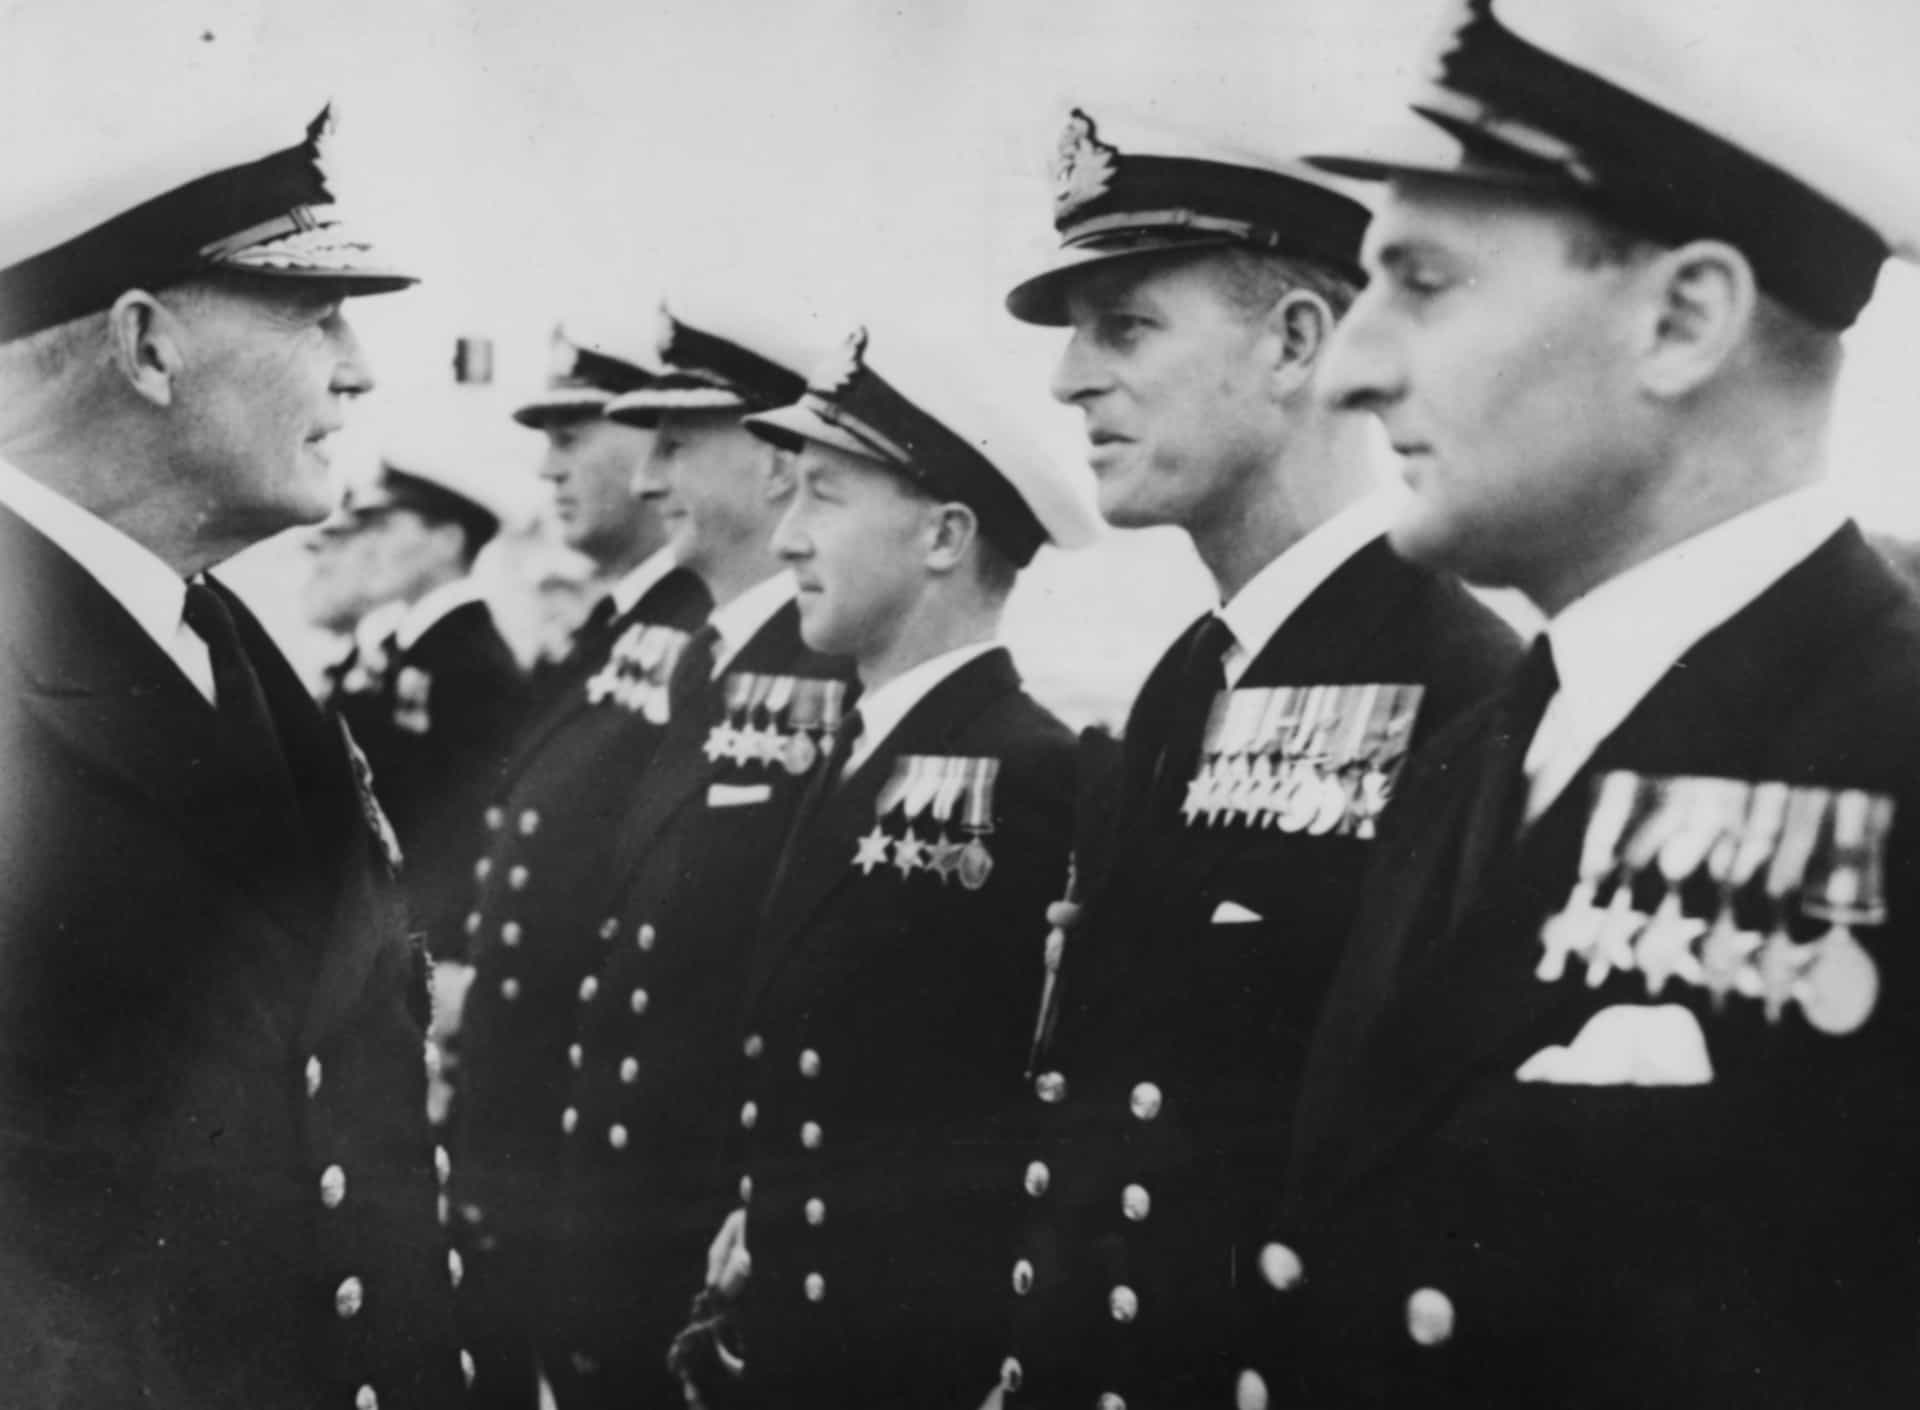 El príncipe Felipe participando en un desfile militar mientras habla con el almirante Sir John Edelsten, comandante a cargo de la flota mediterránea británica, en HMS Phoenicia (Malta), 1950.